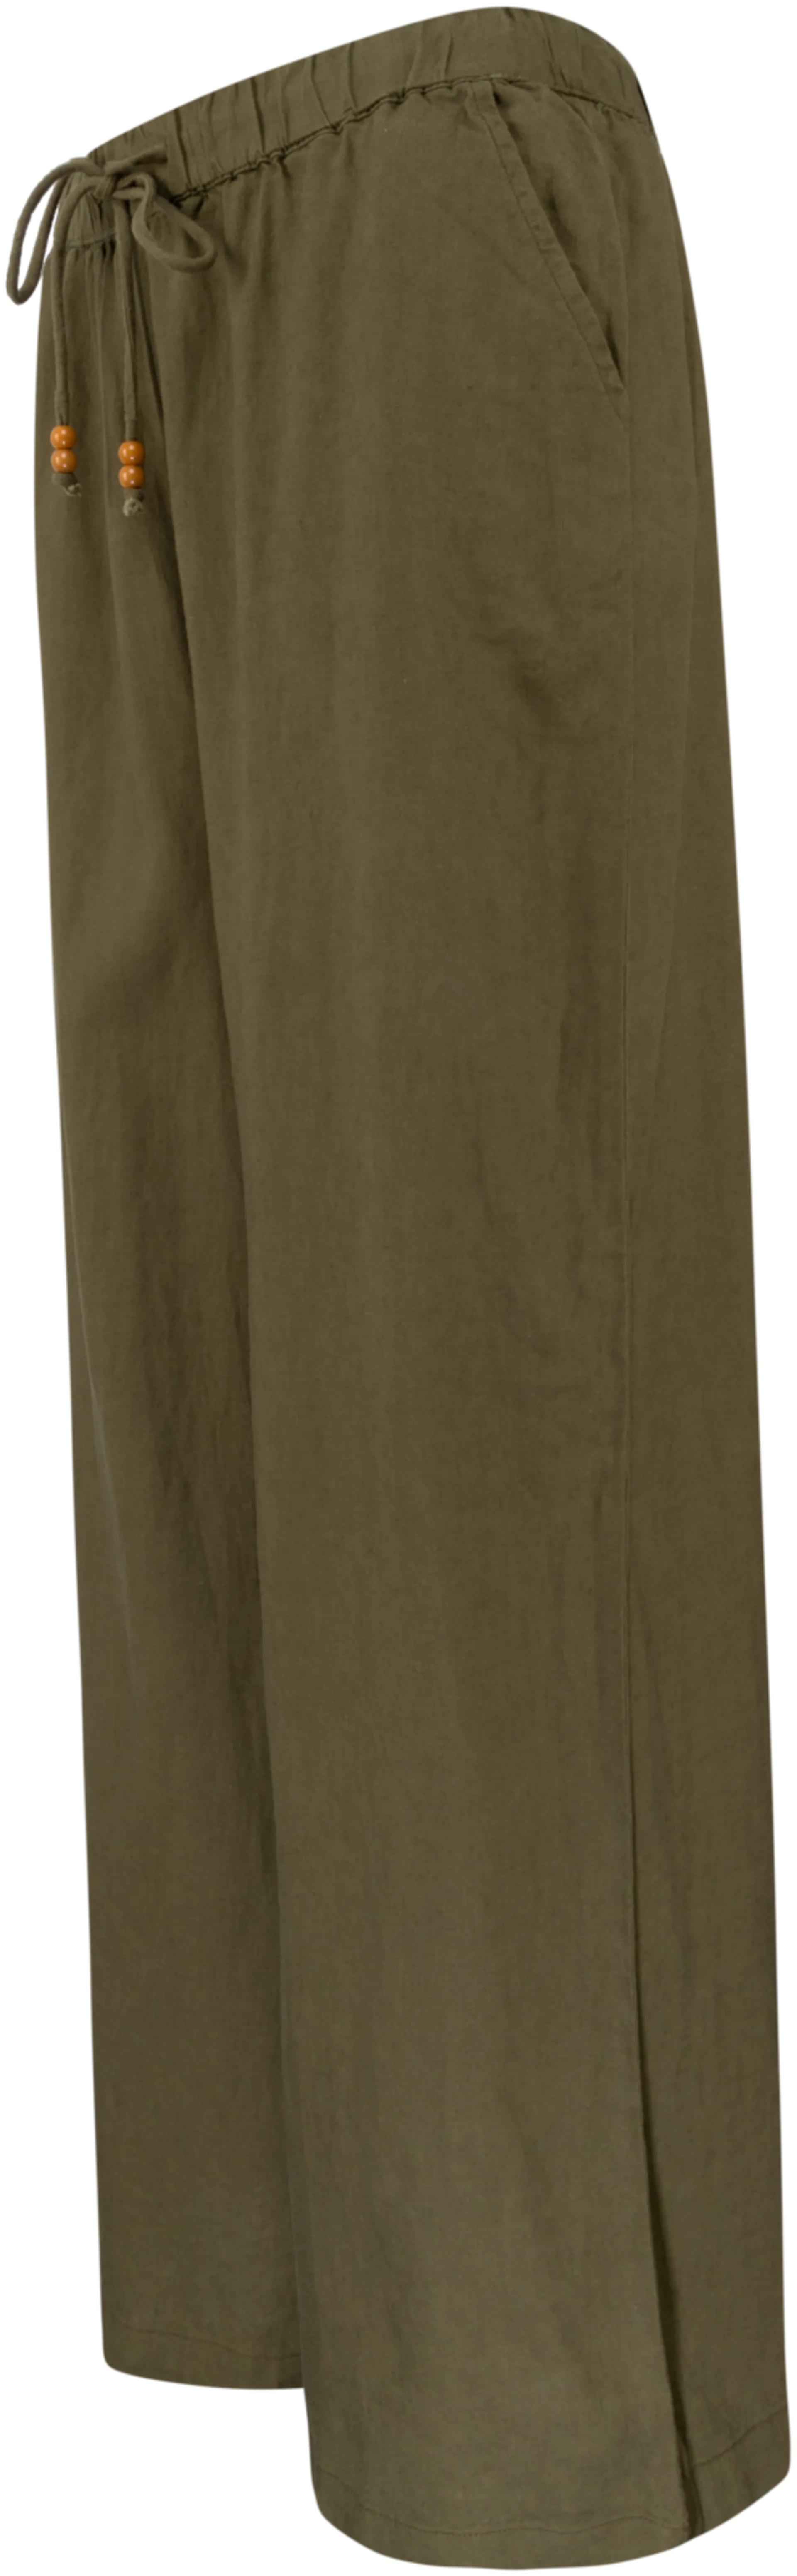 TEX naisten pellavasekoitteiset housut I961357 - KHAKI DARK - 2